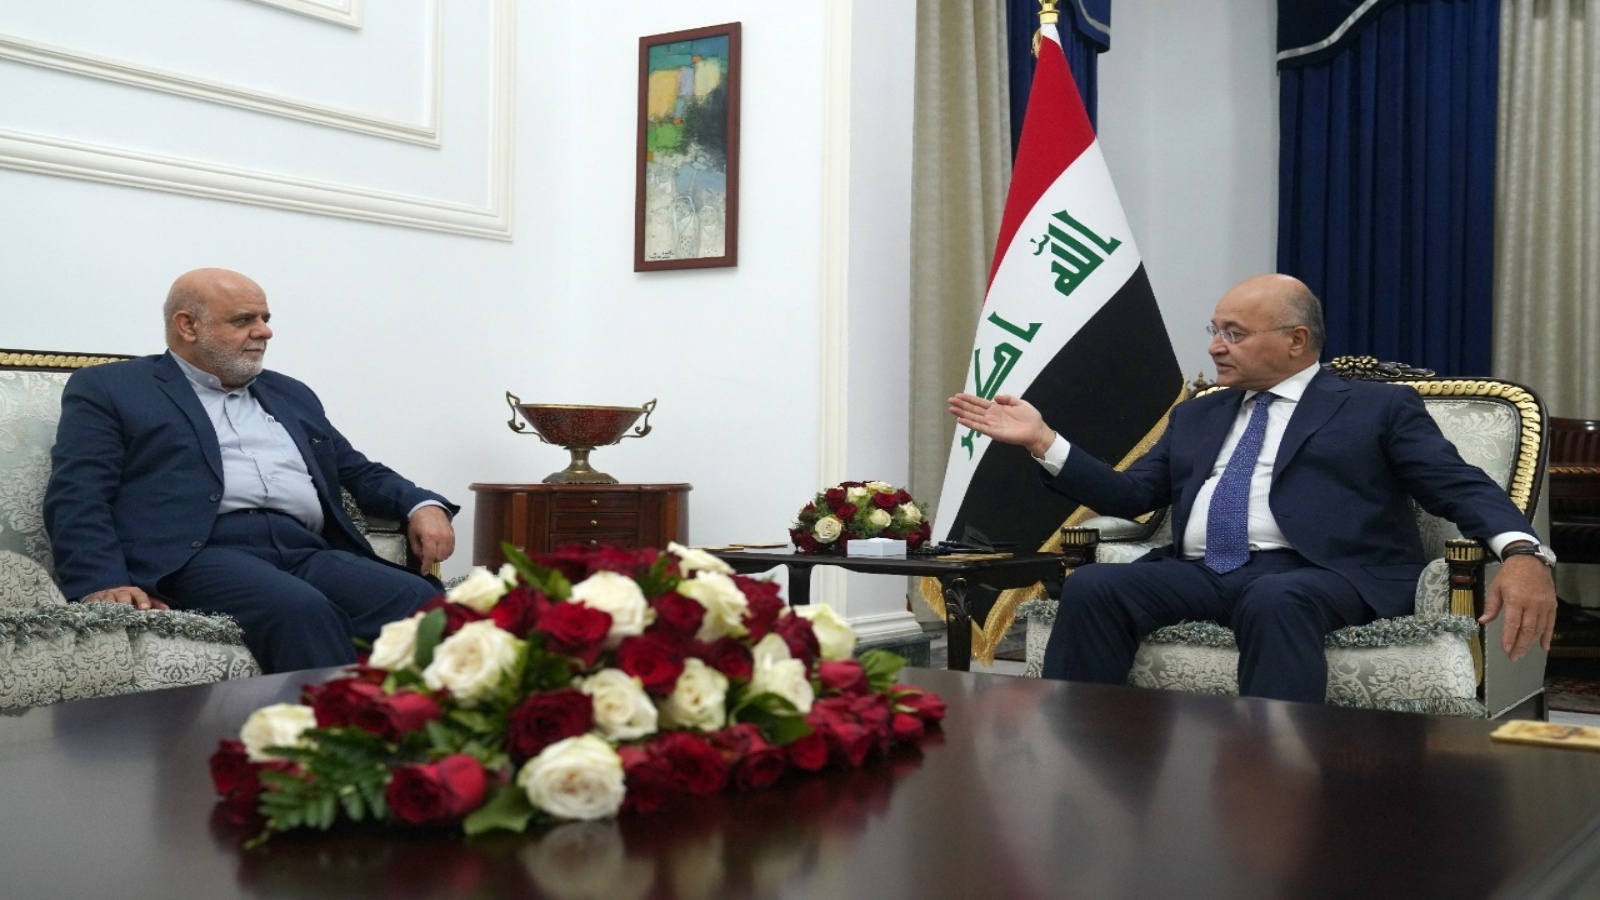 الرئيس العراقي بهم صالح والسفير الايراني ايرج مسجدي خلال لقائهما في بغداد اليوم